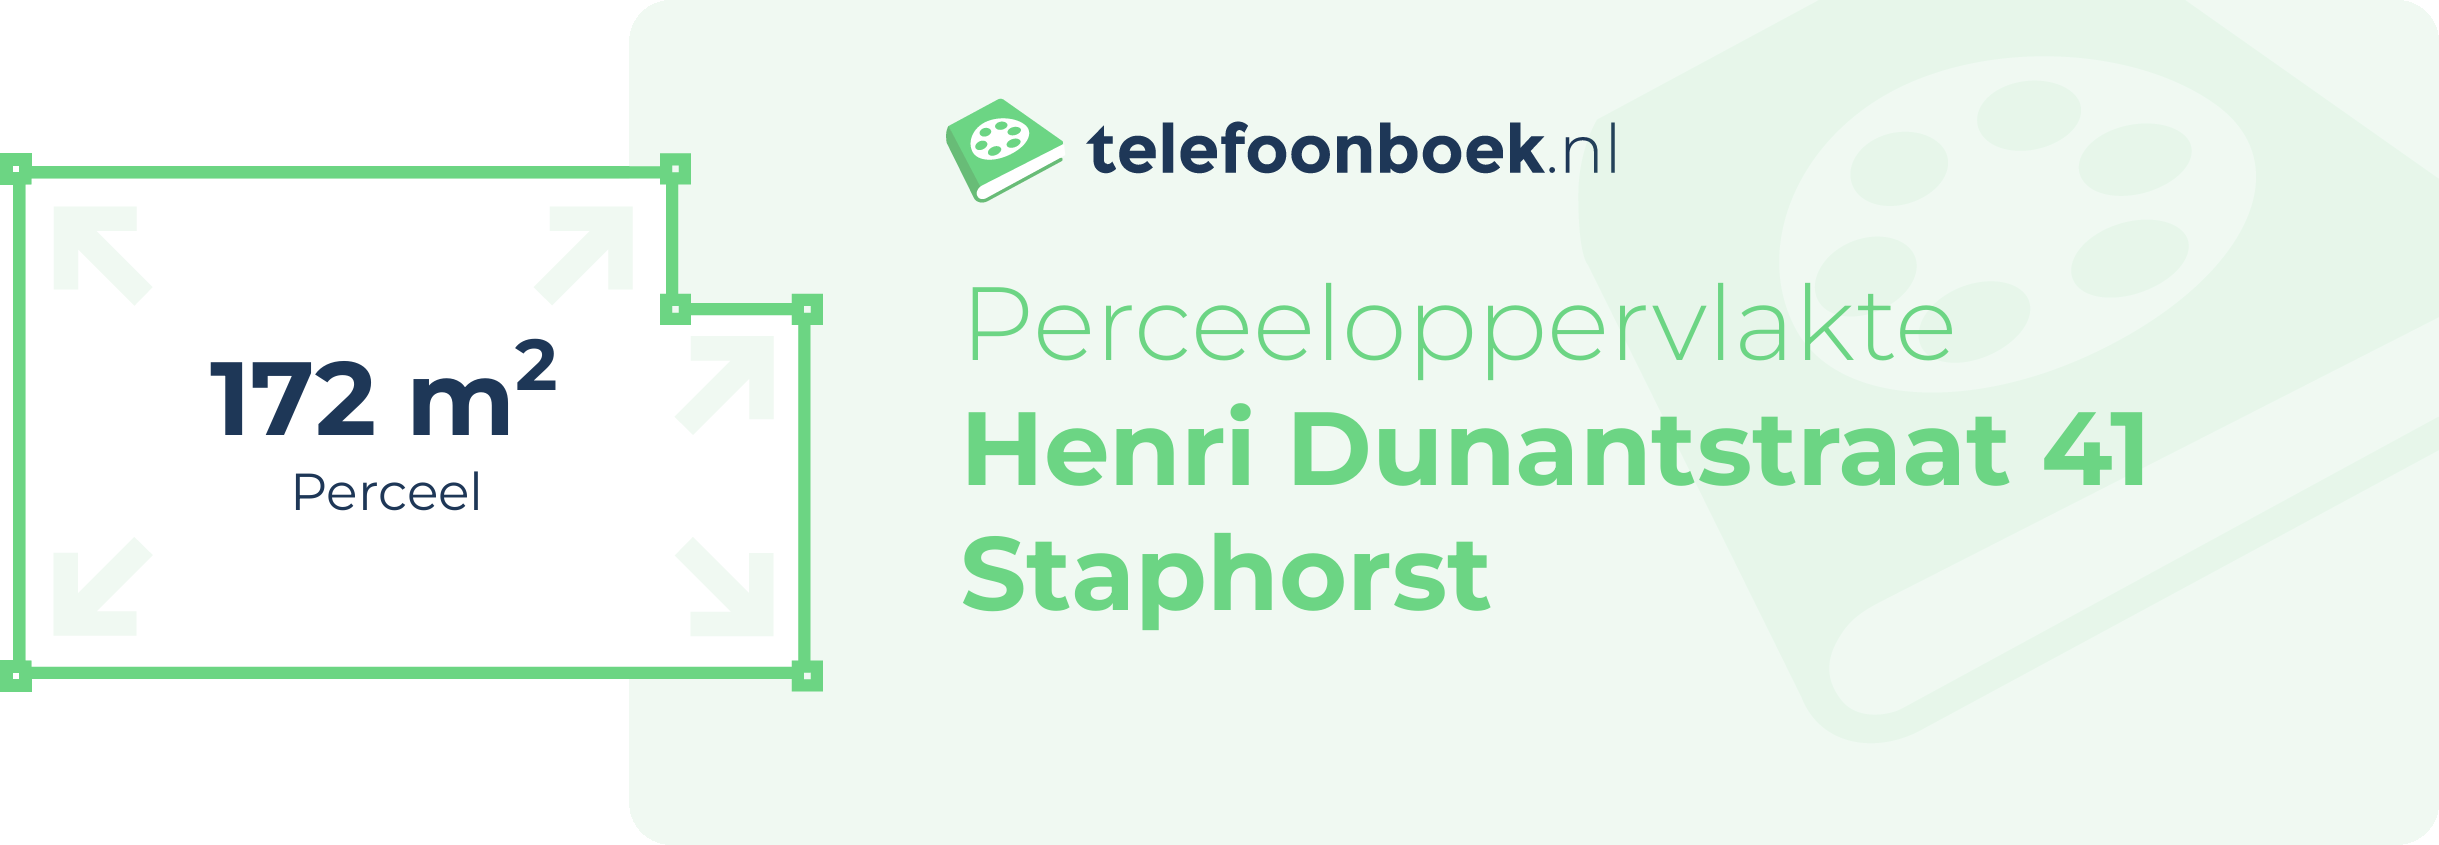 Perceeloppervlakte Henri Dunantstraat 41 Staphorst